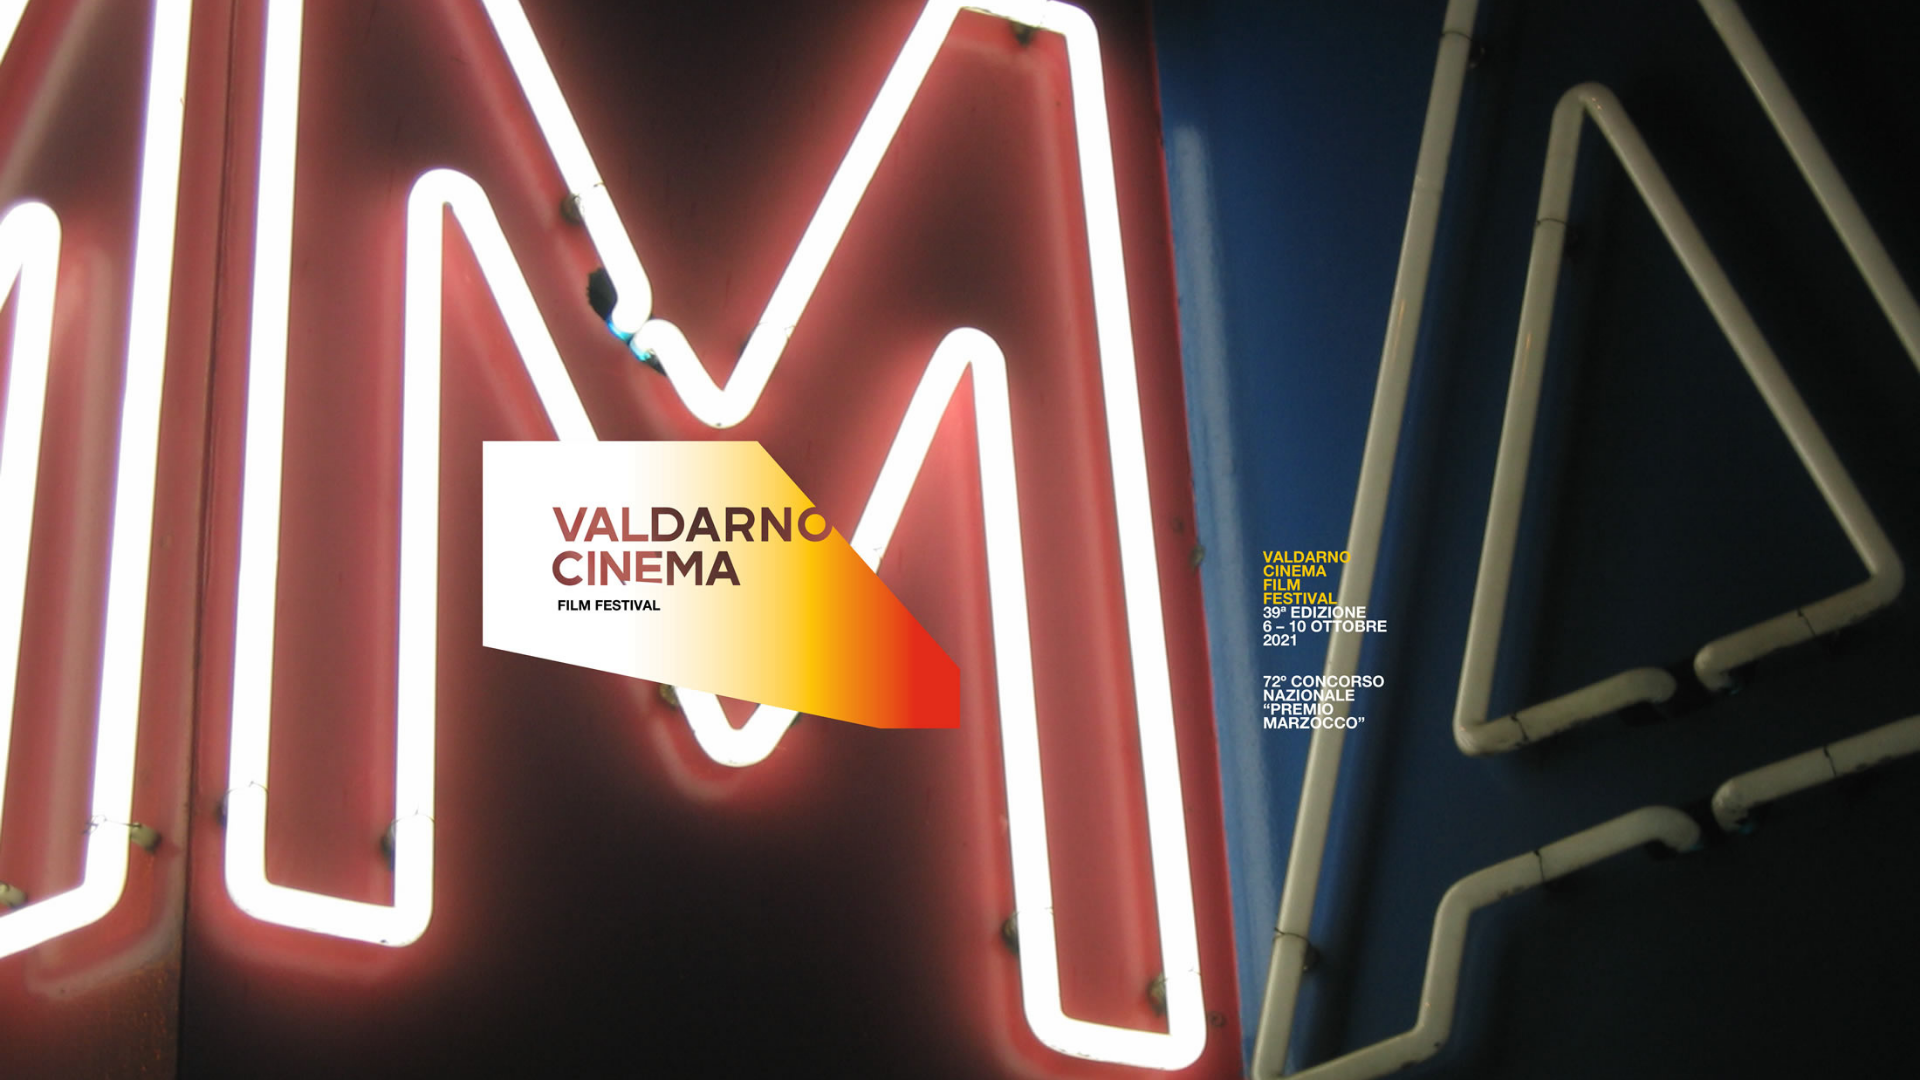 ValdarnoCinema Film Festival – Il trailer della 39° edizione